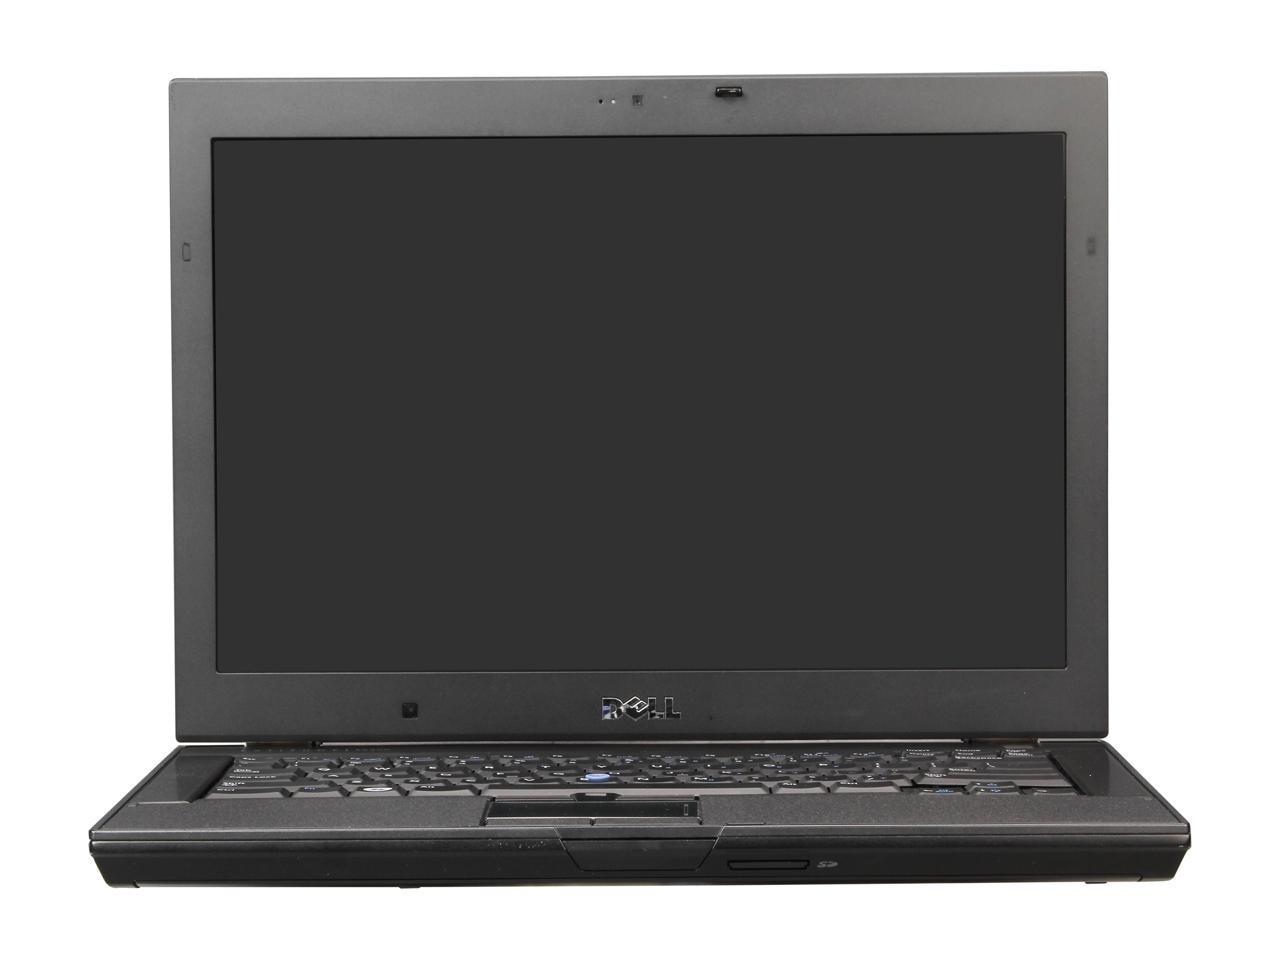 Refurbished: DELL Laptop Latitude E6400 Intel Core 2 Duo 2.53 GHz 4 GB